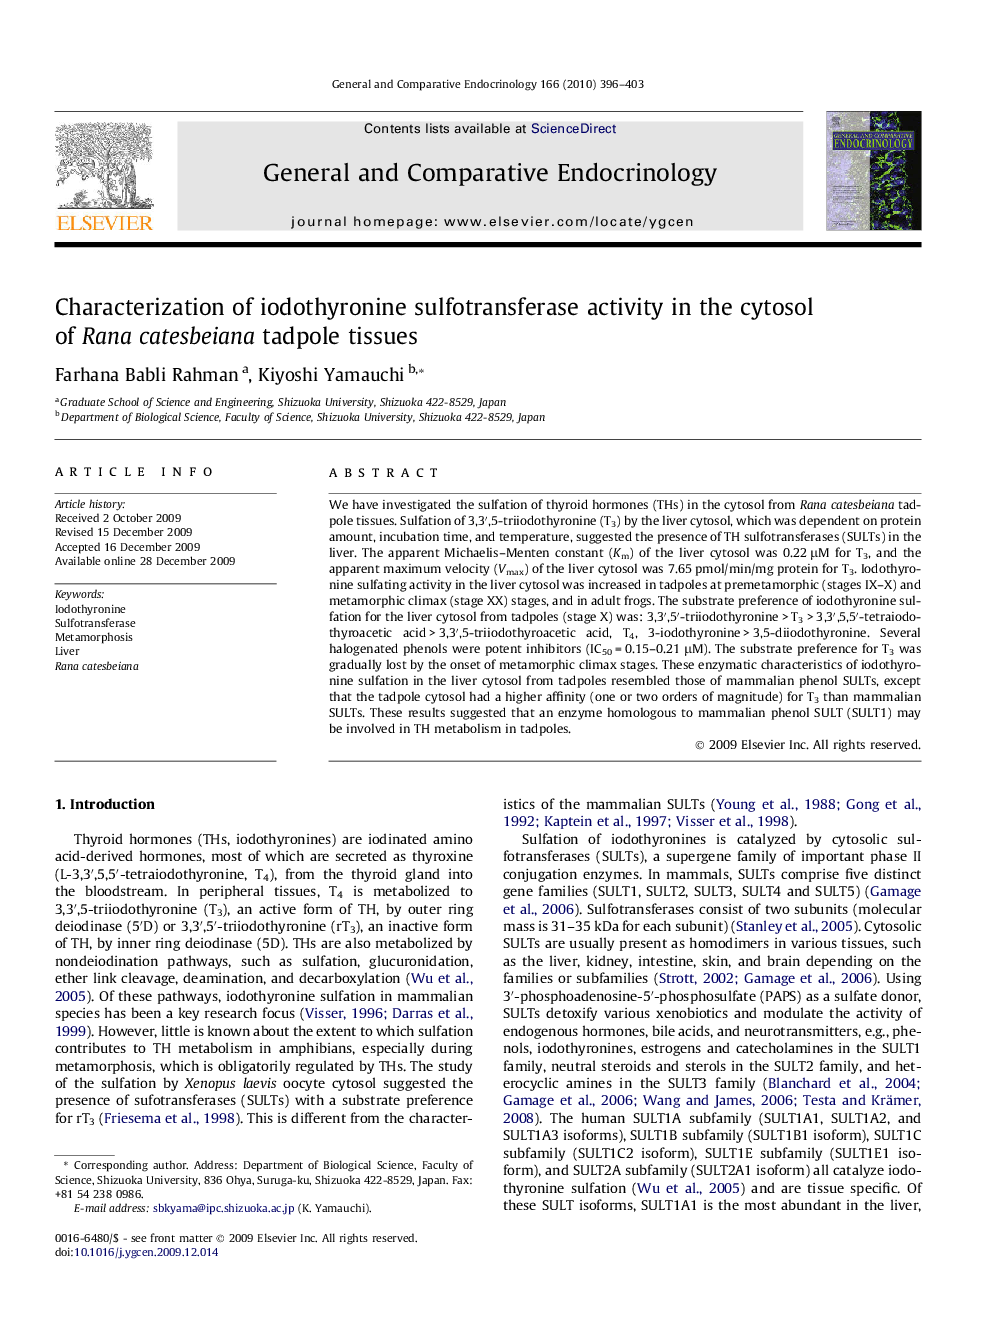 Characterization of iodothyronine sulfotransferase activity in the cytosol of Rana catesbeiana tadpole tissues